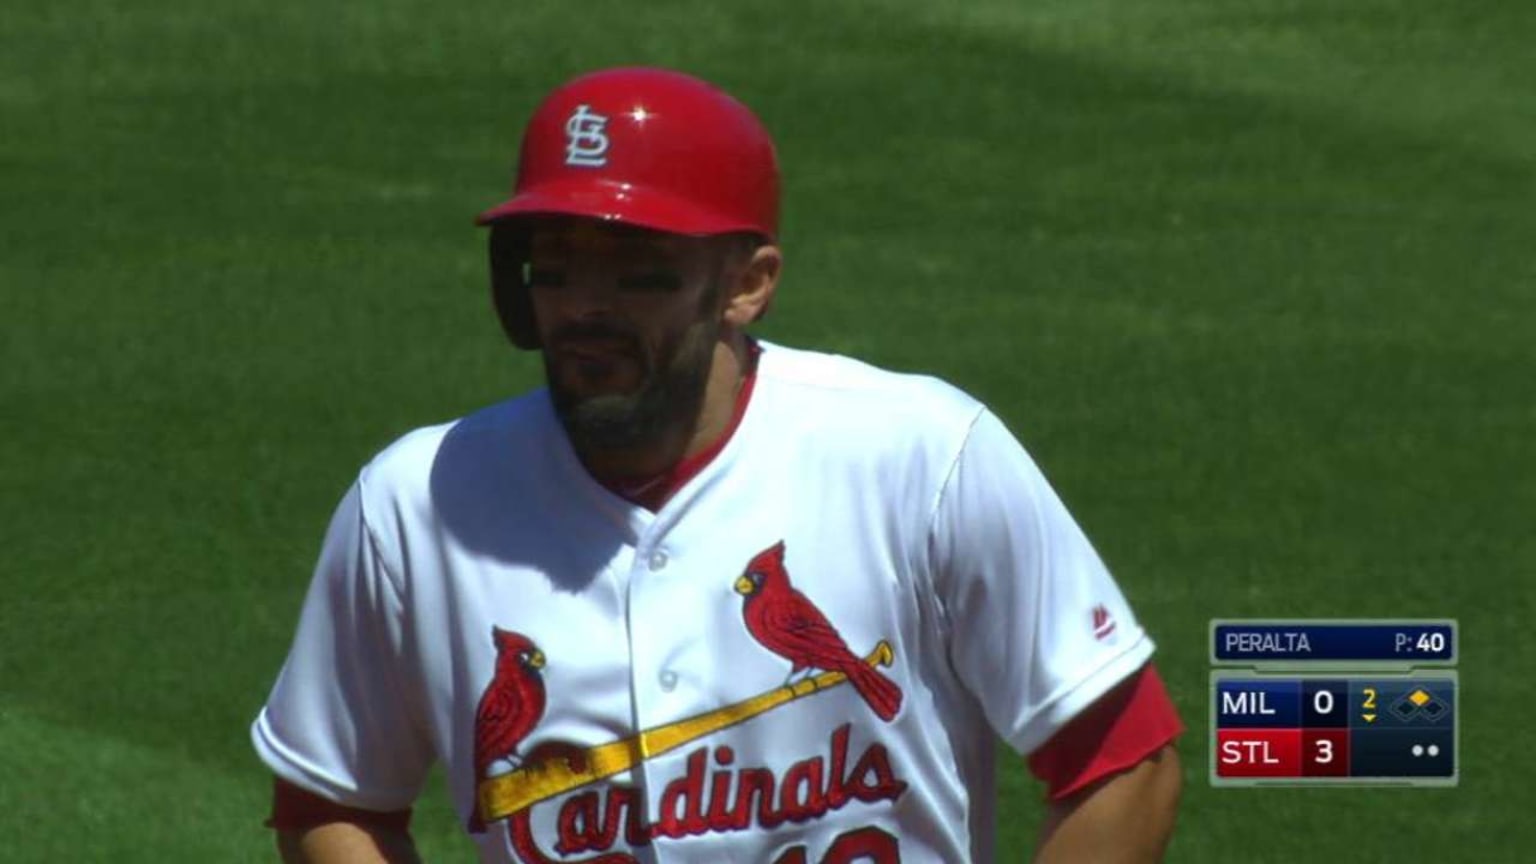 MLB St. Louis Cardinals (Matt Carpenter) Men's Replica Baseball Jersey